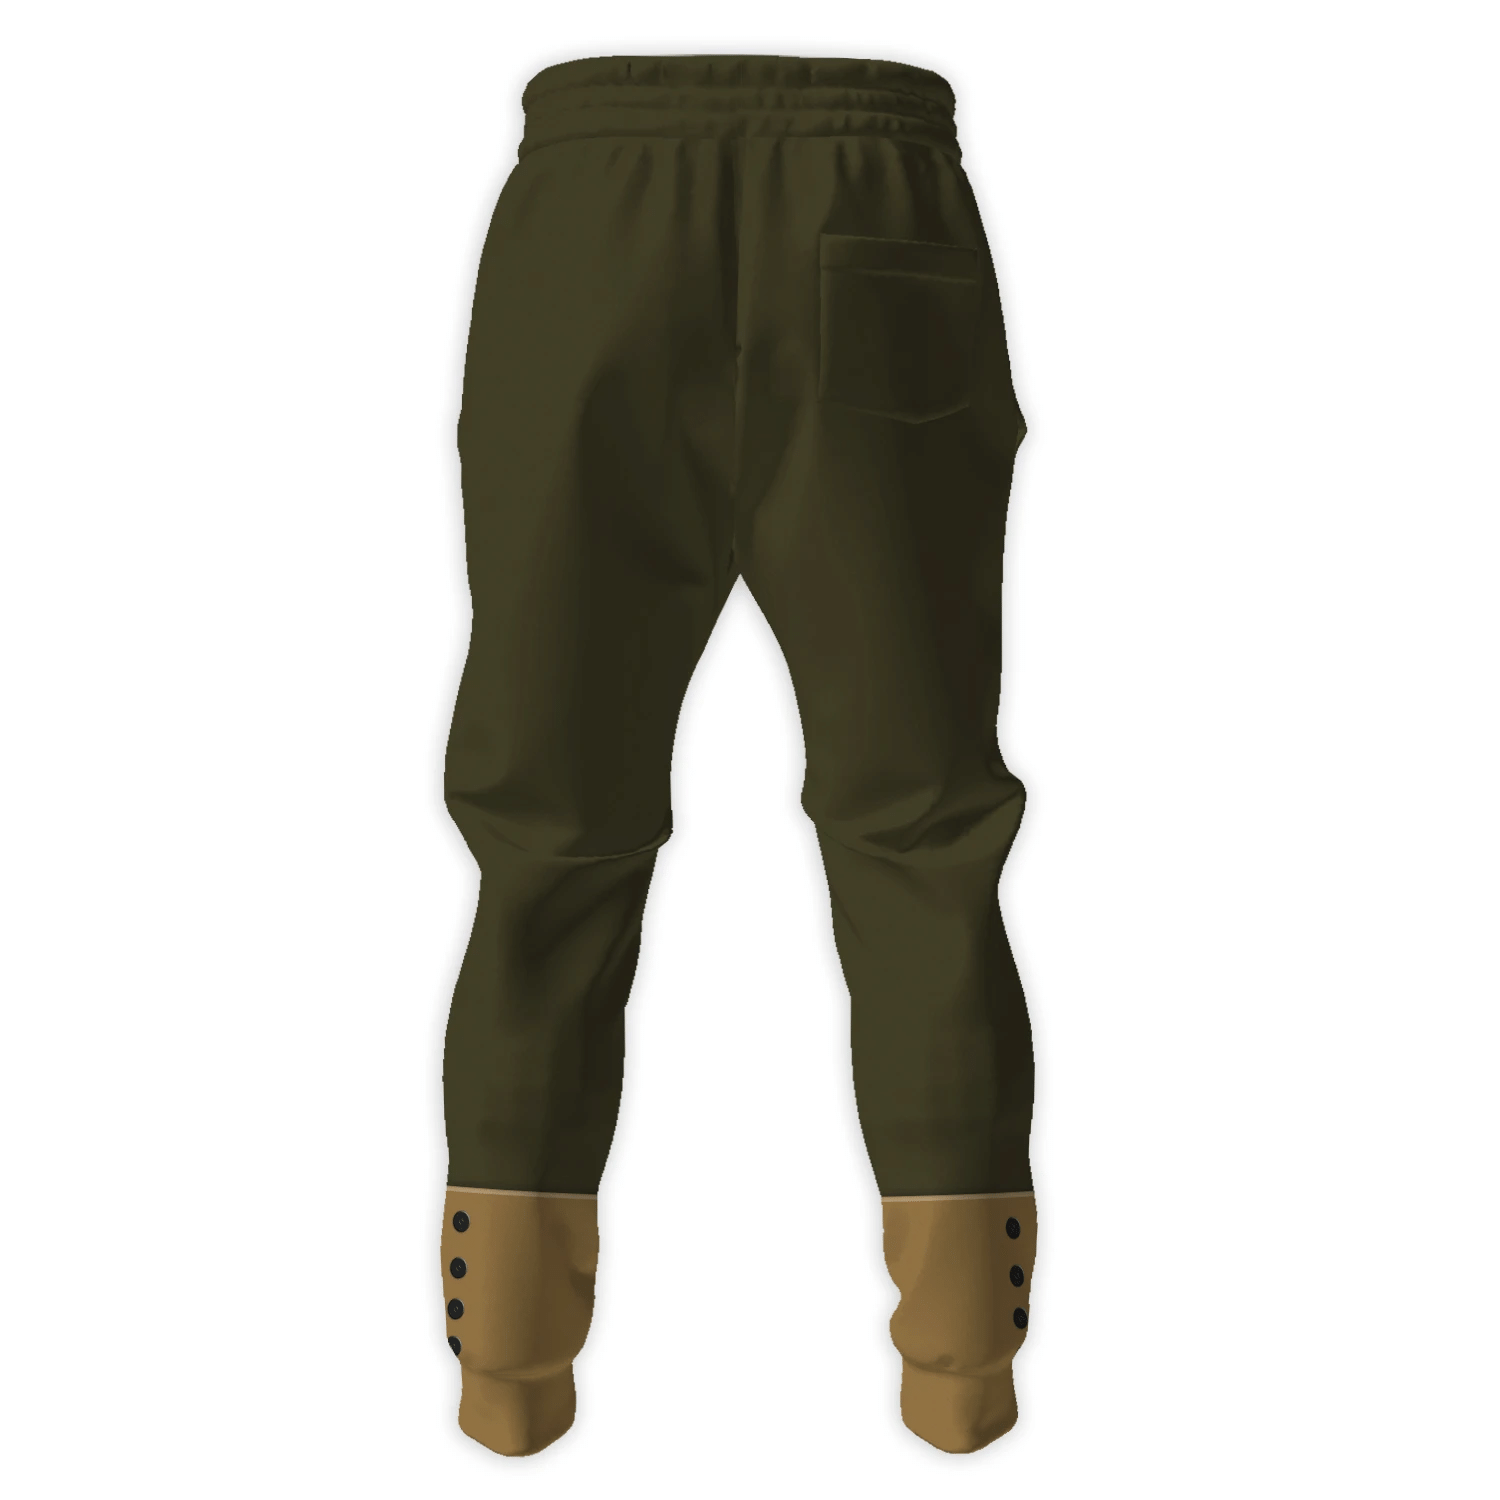 Gearhomie US Army WW1 Infantryman Costume pants